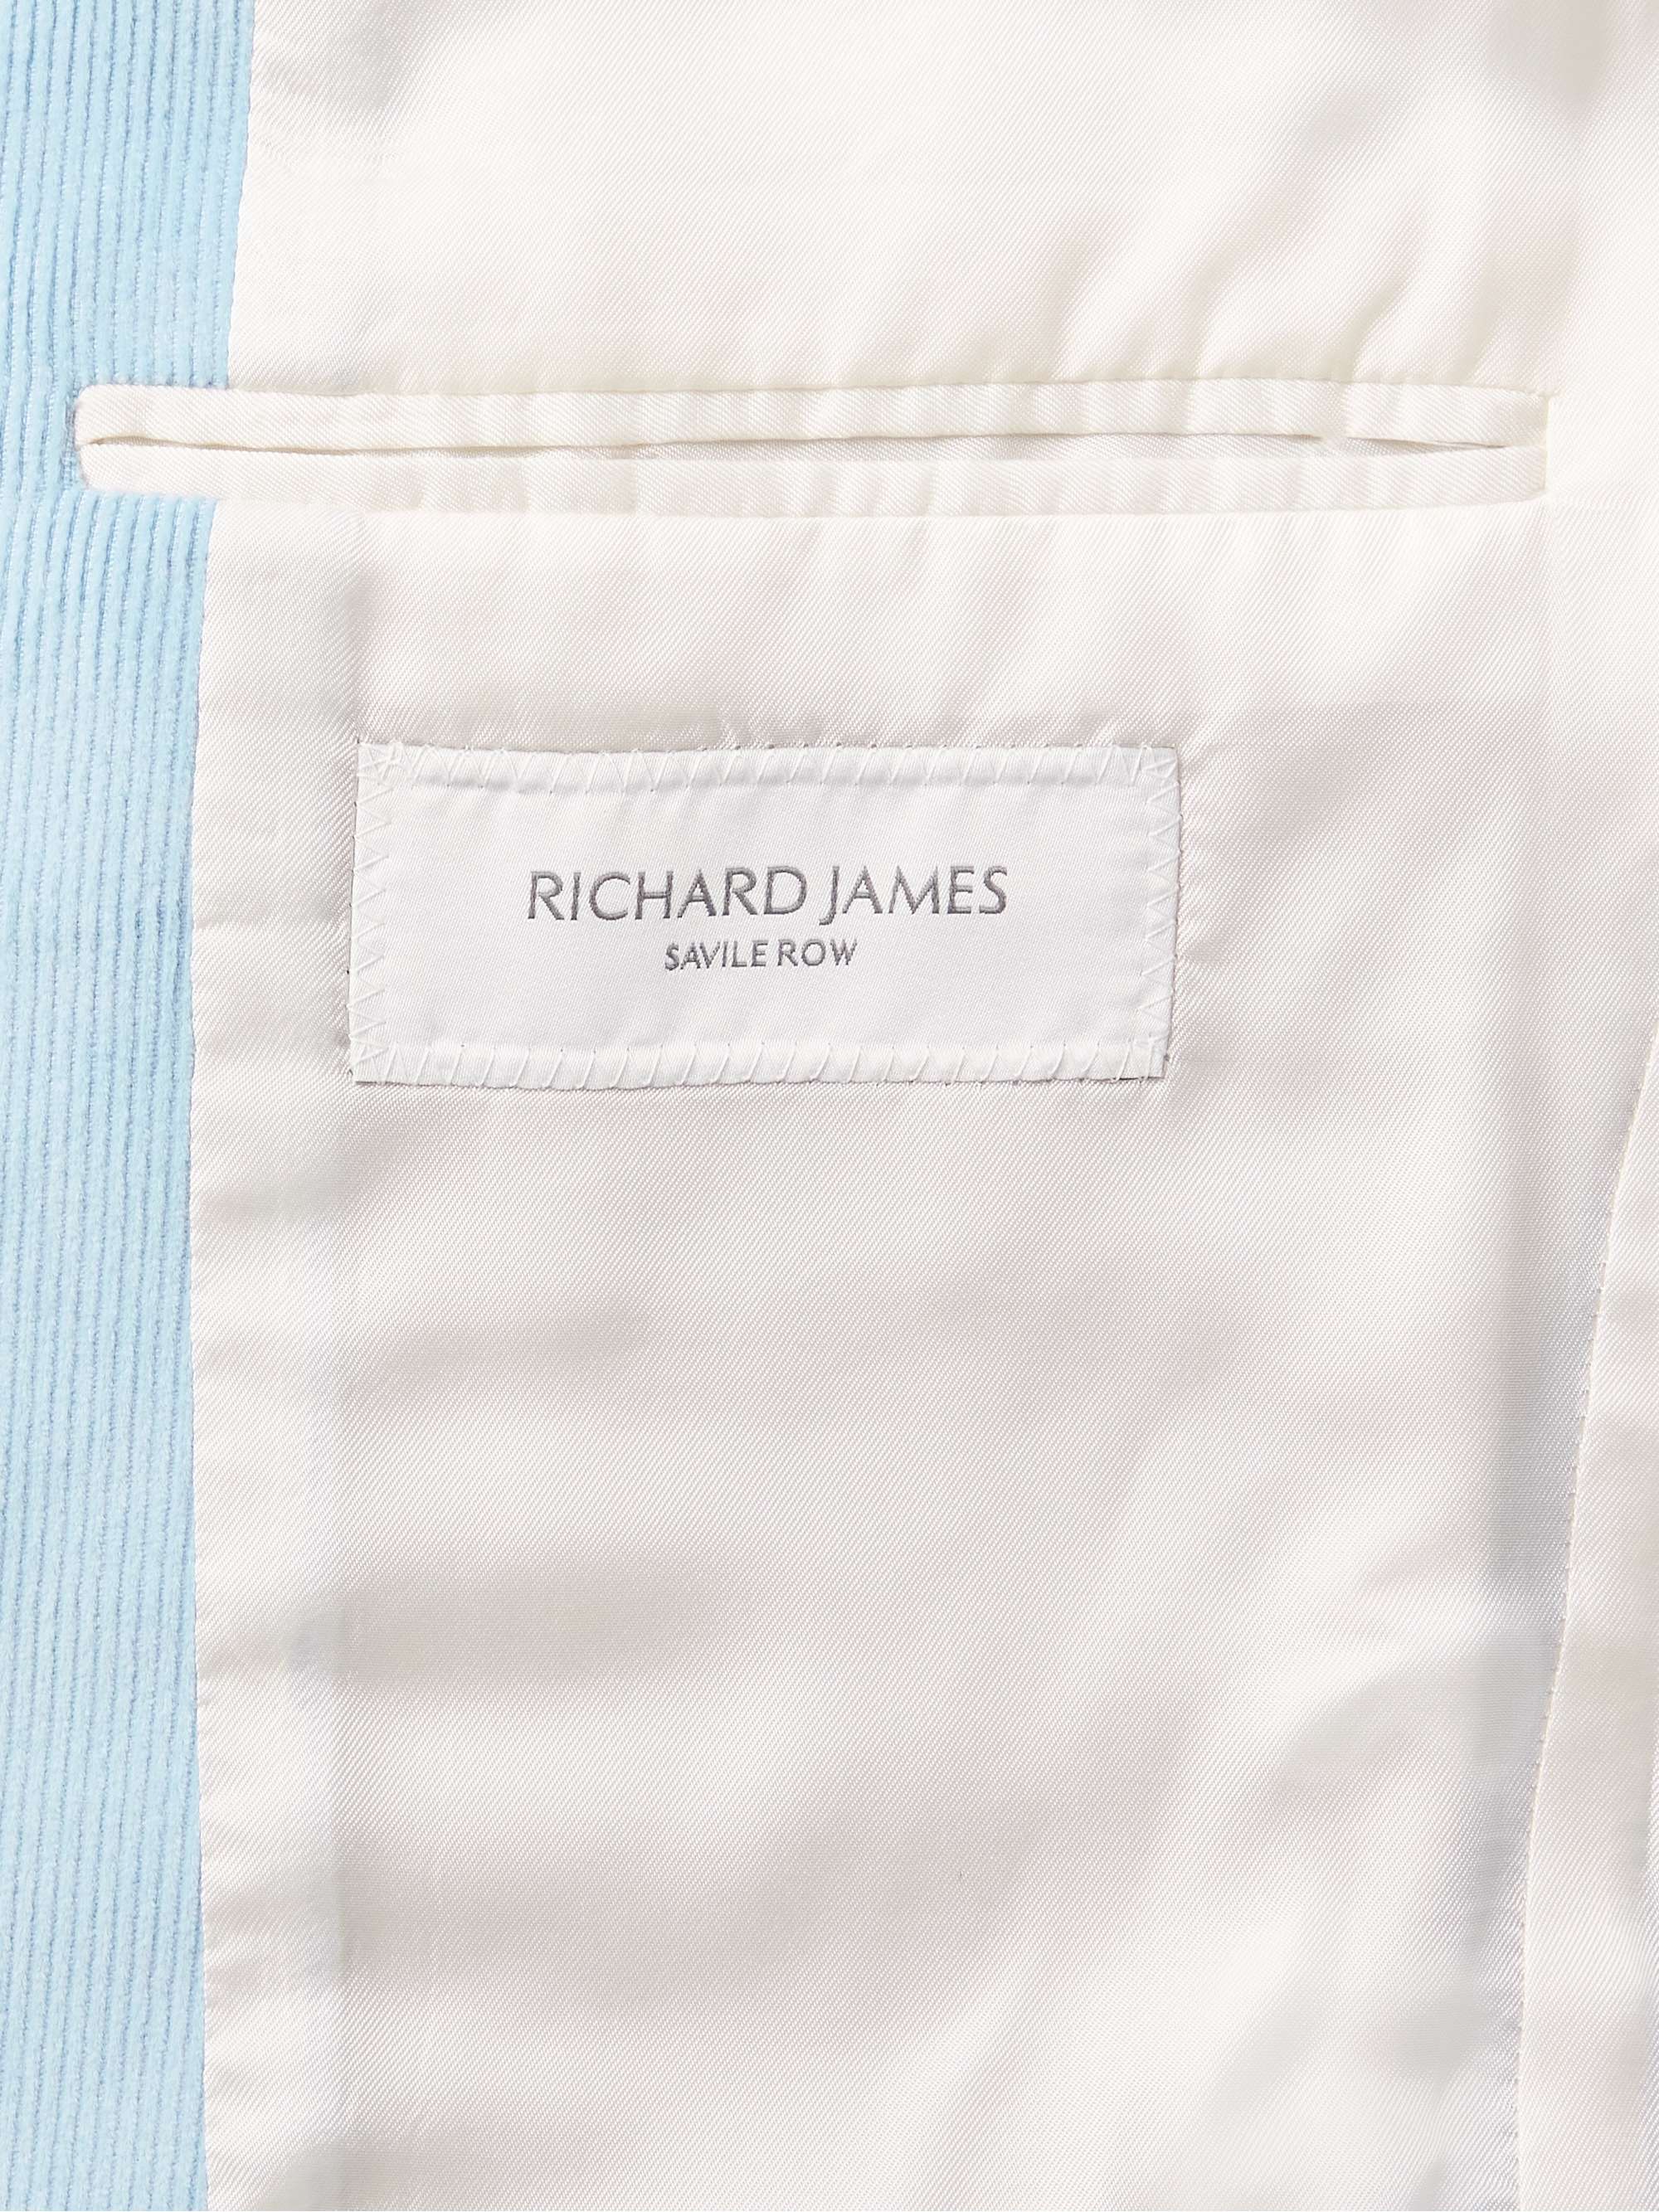 RICHARD JAMES 